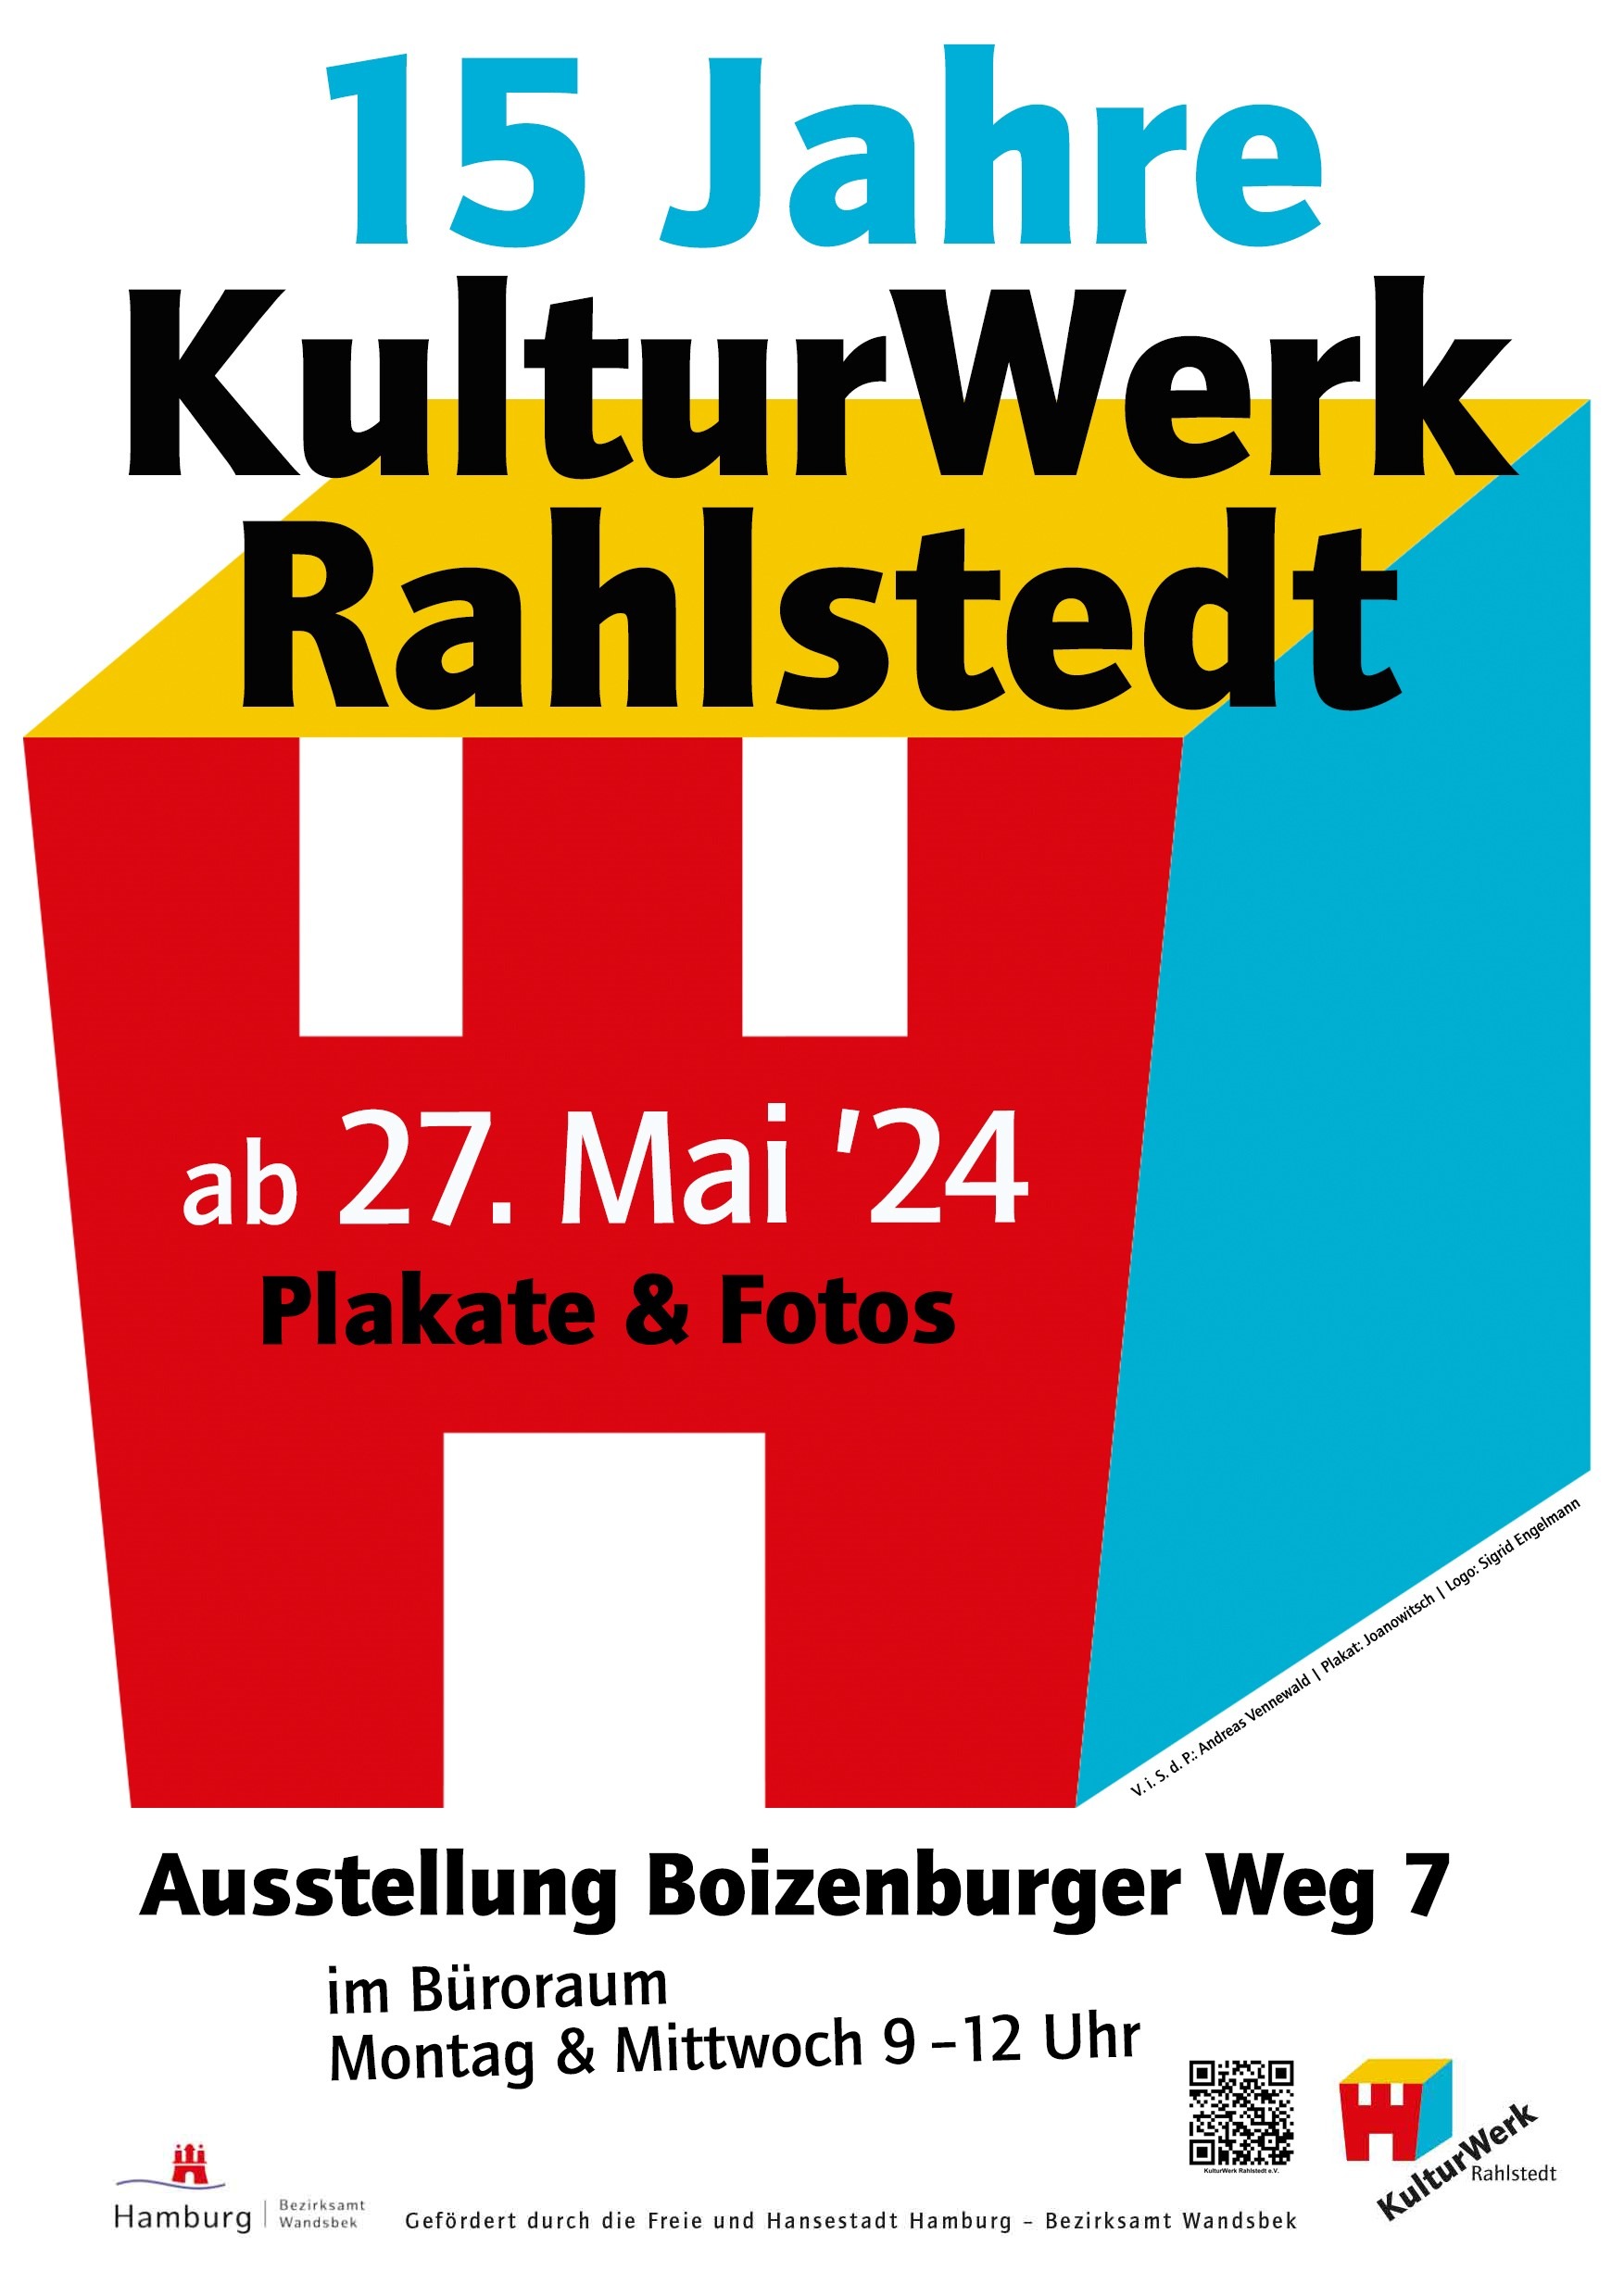 15 Jahre KulturWerk Rahlstedt e.V.